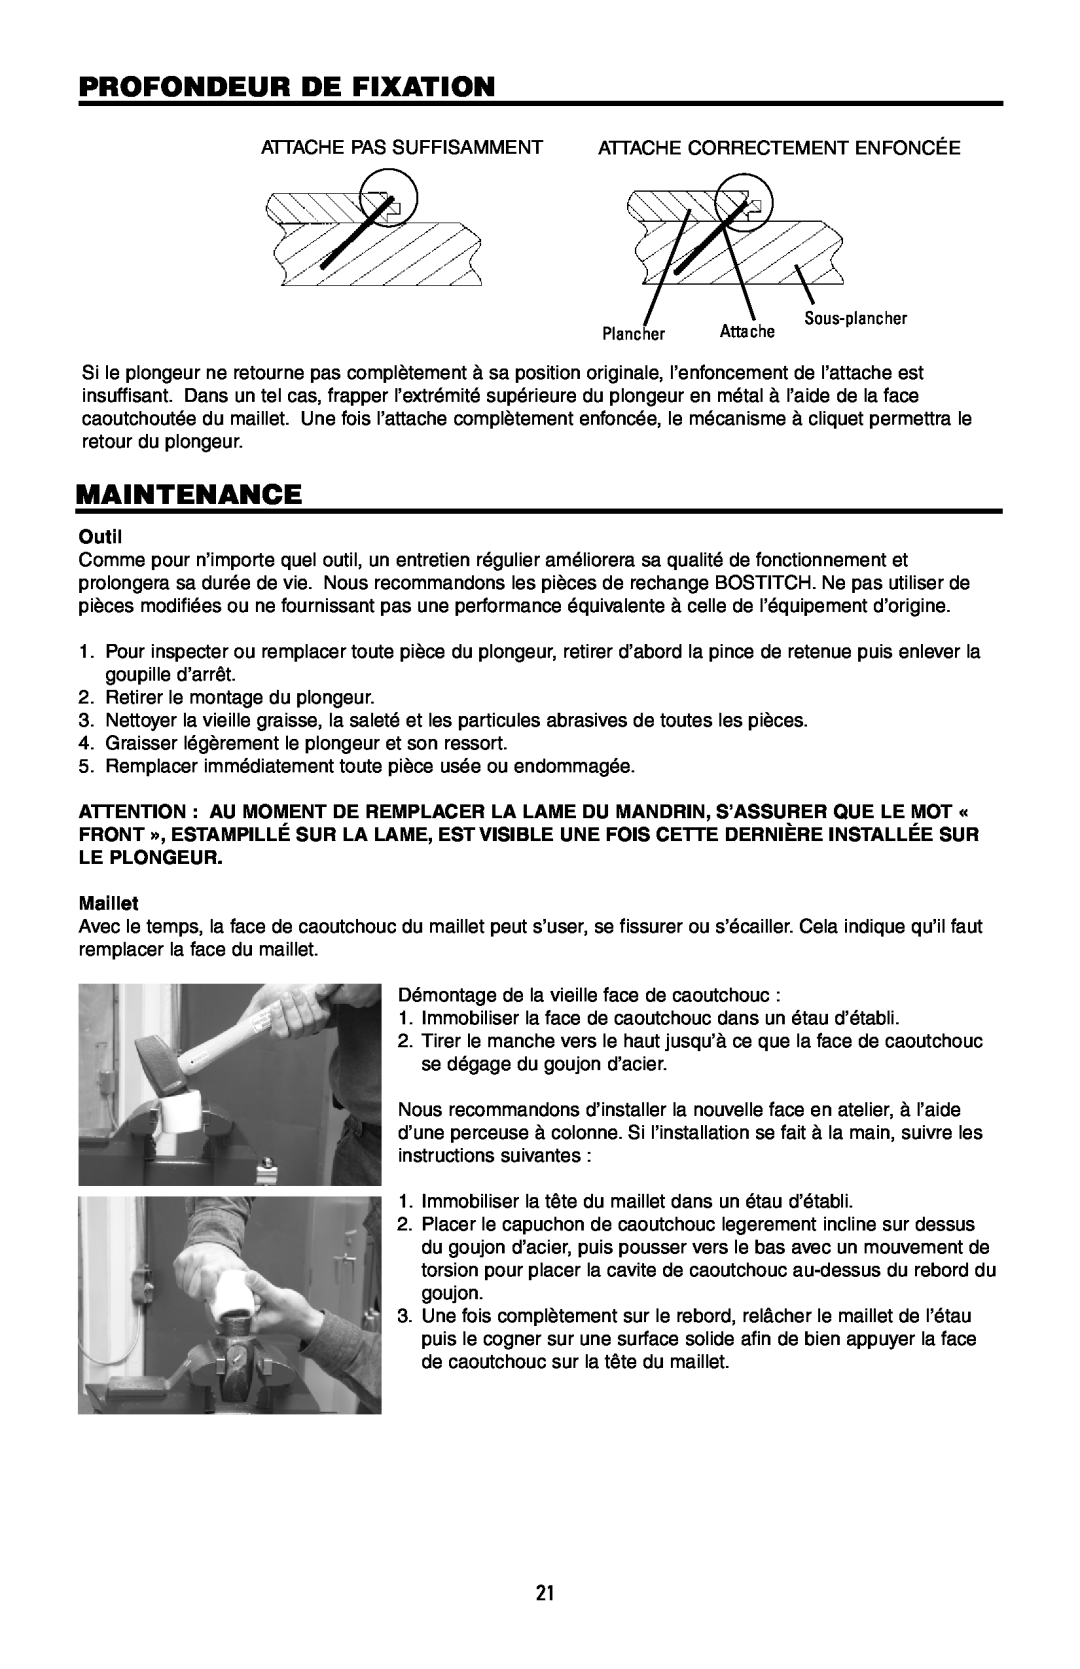 Bostitch 175616REVB, MFN-200 manual Profondeur De Fixation, Maintenance, Outil, Maillet 